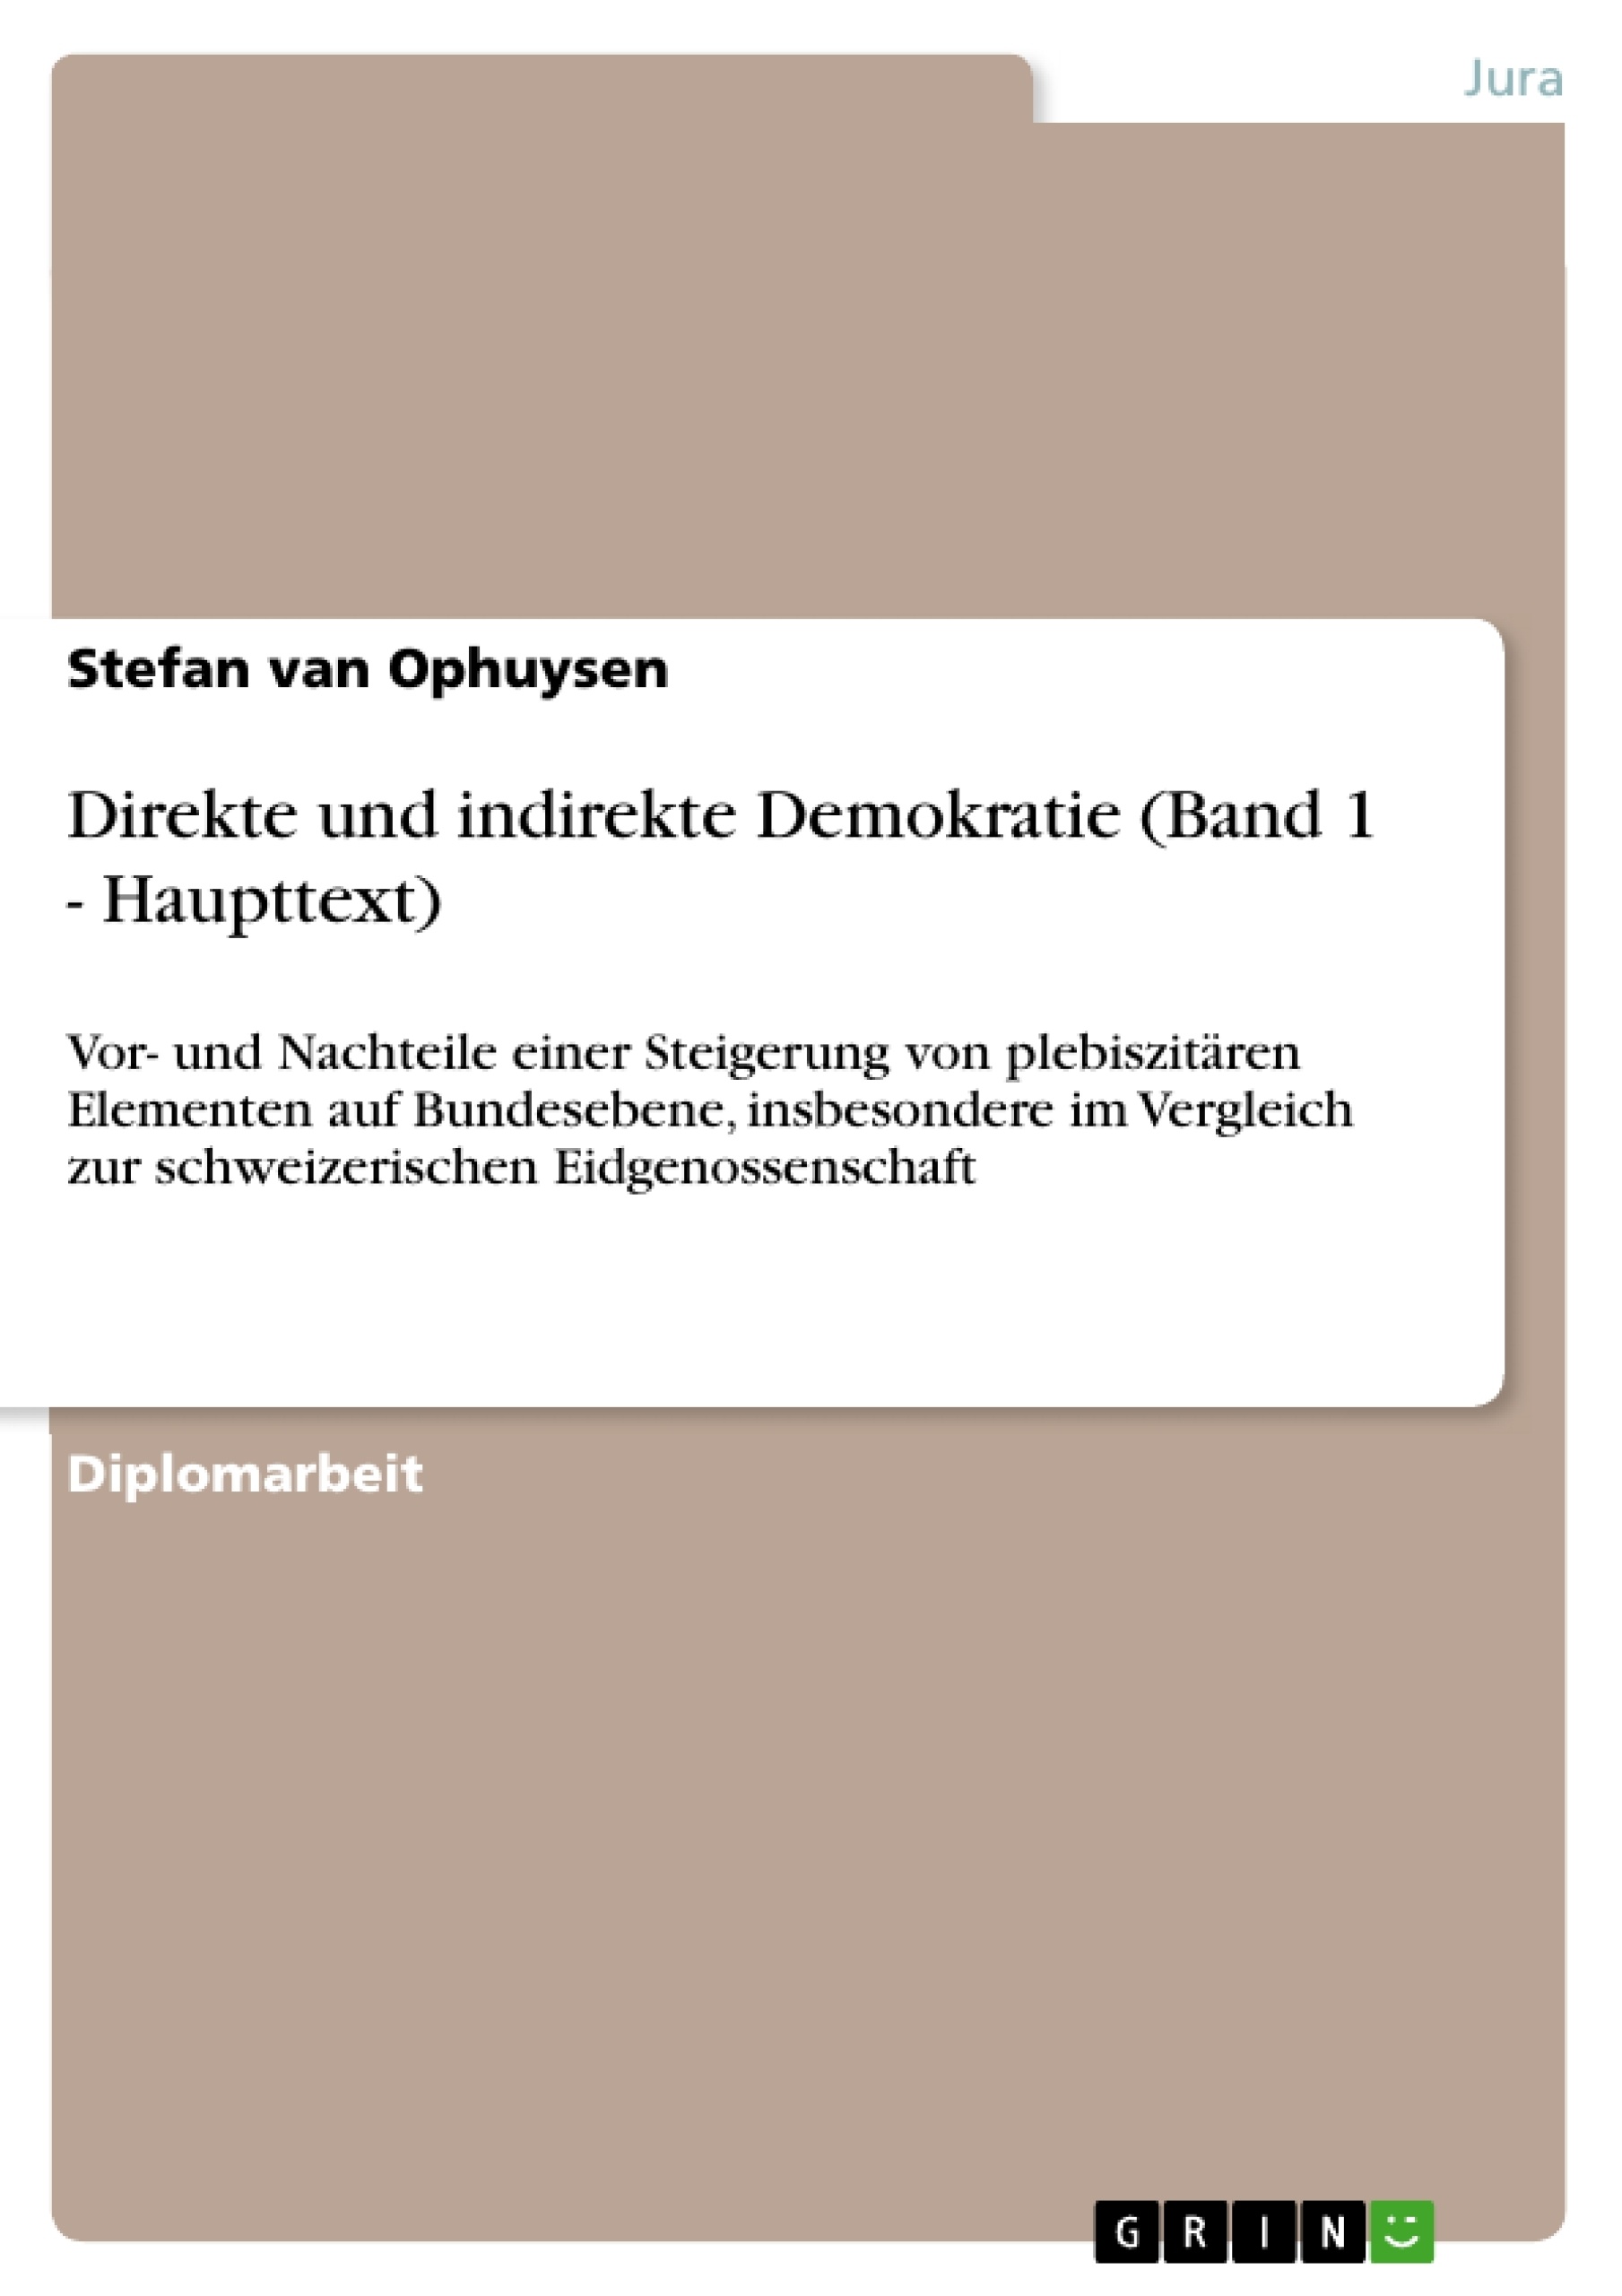 Title: Direkte und indirekte Demokratie (Band 1 - Haupttext)